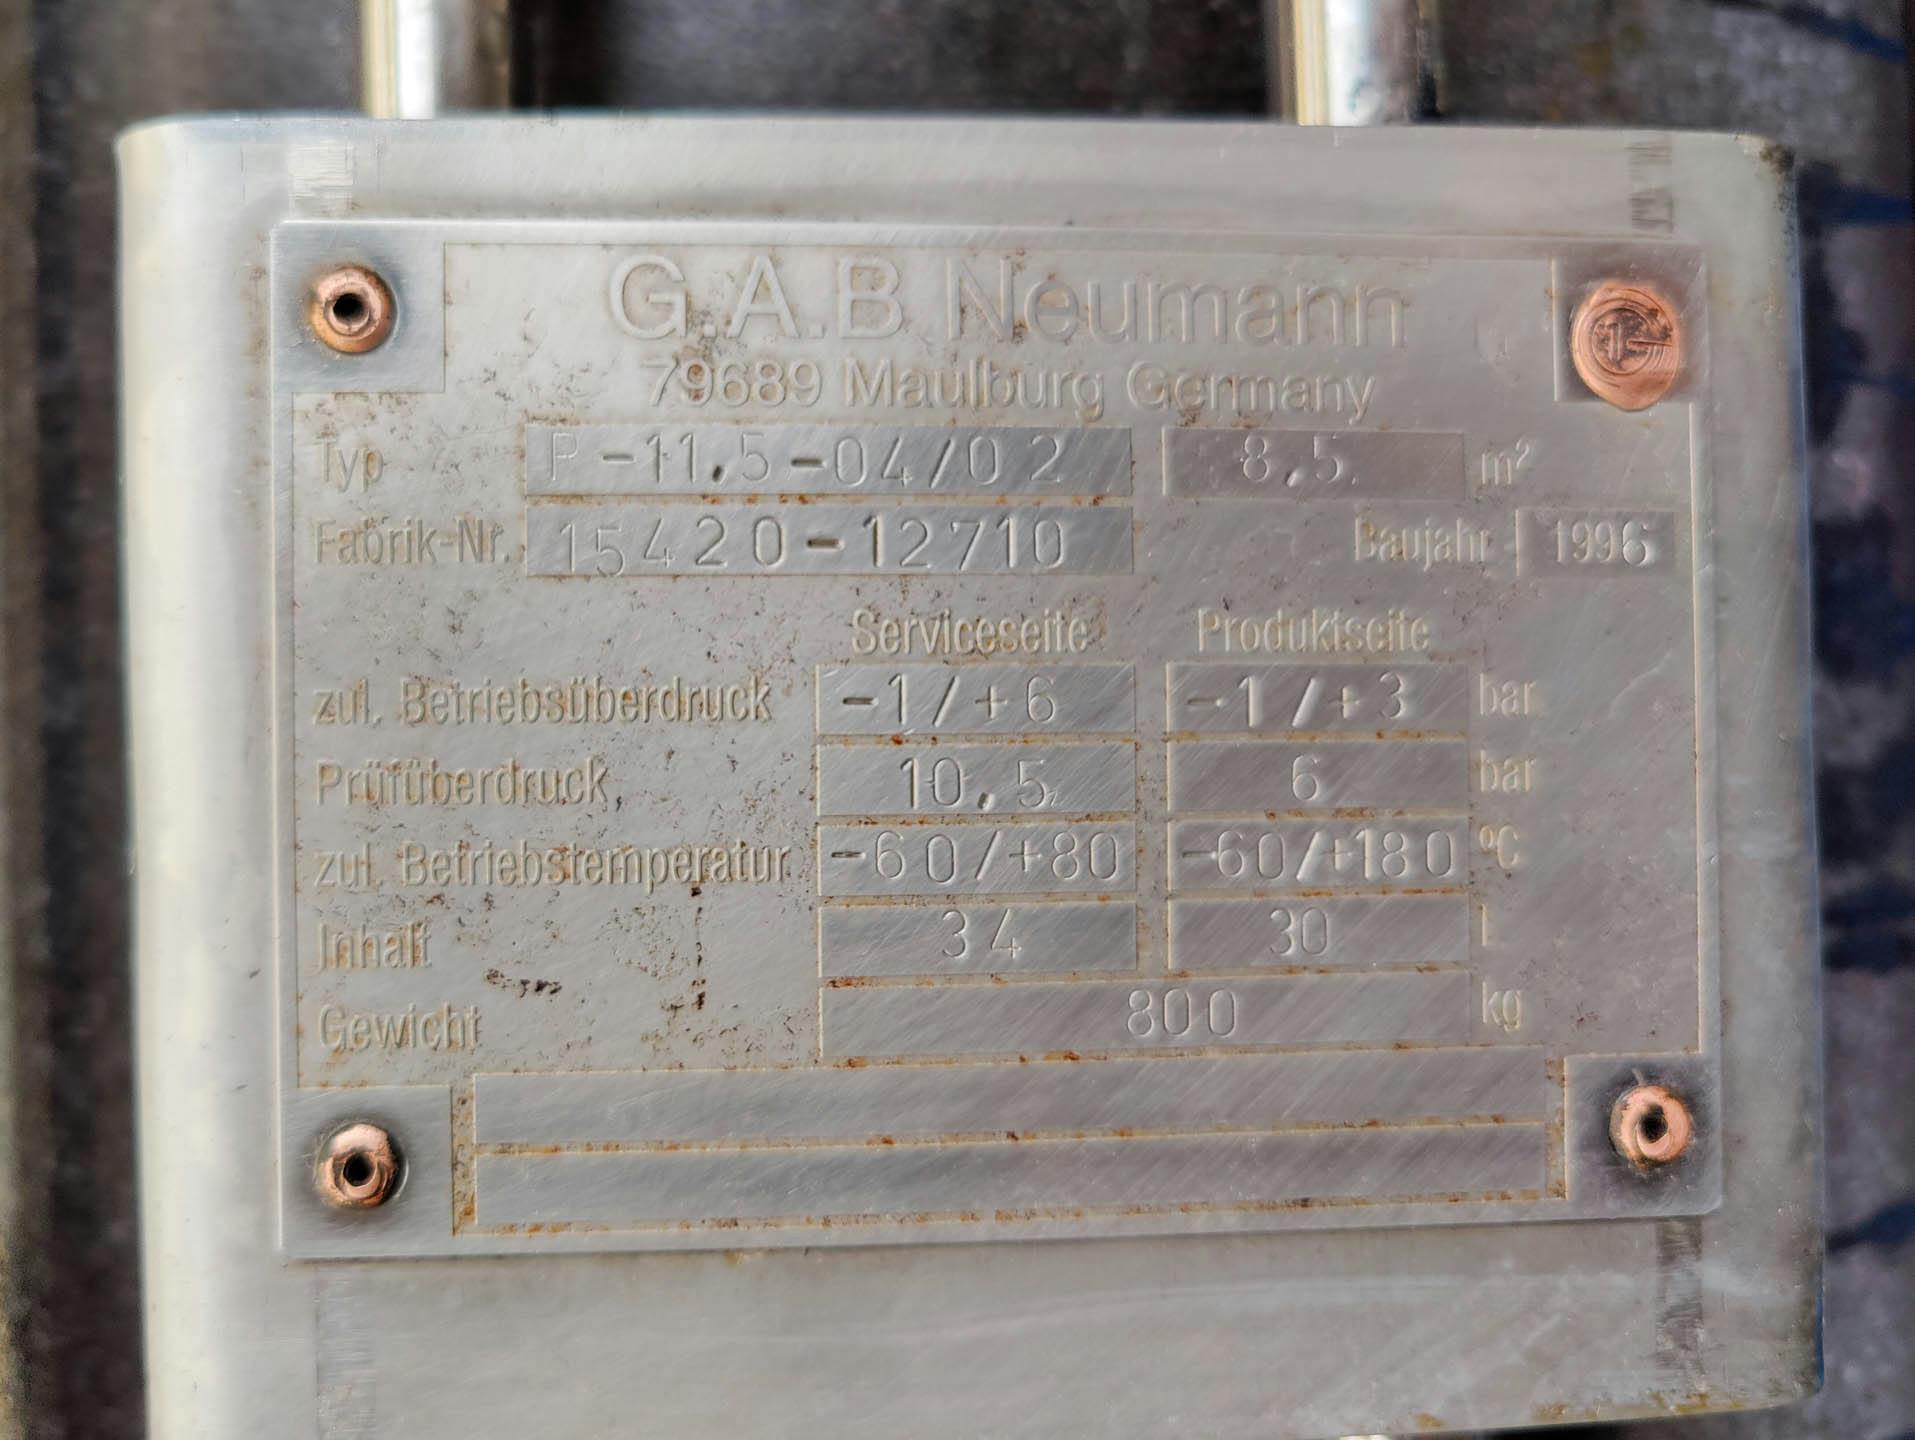 Gab Neumann R-11,5-04/02 Ringnut - Intercambiador de calor de carcasa y tubos - image 6